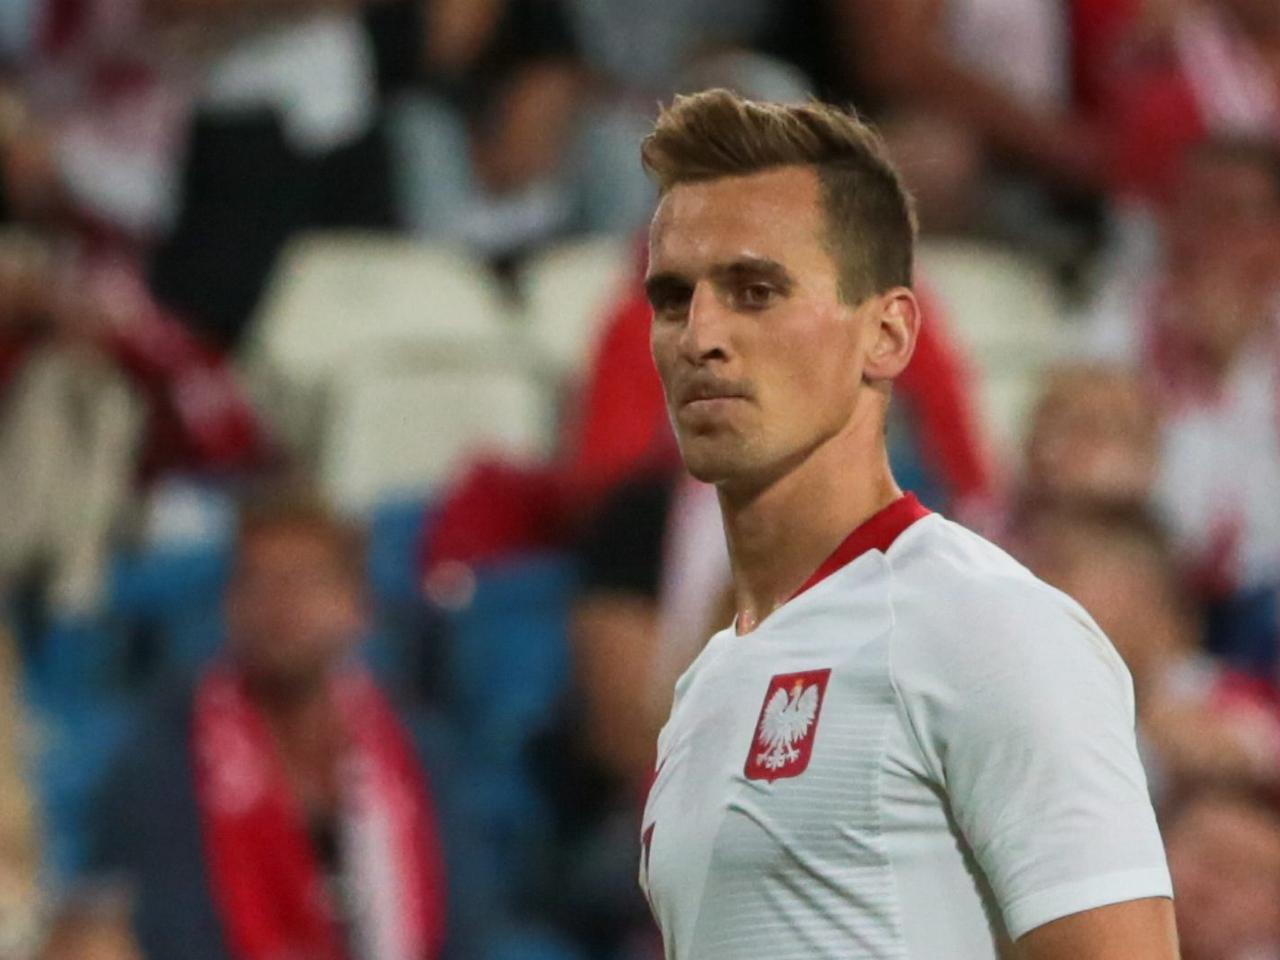 Polskie kluby zarobią miliony na transferze Milika? Wszystko dzięki kluczowej zmianie wprowadzonej przez FIFA